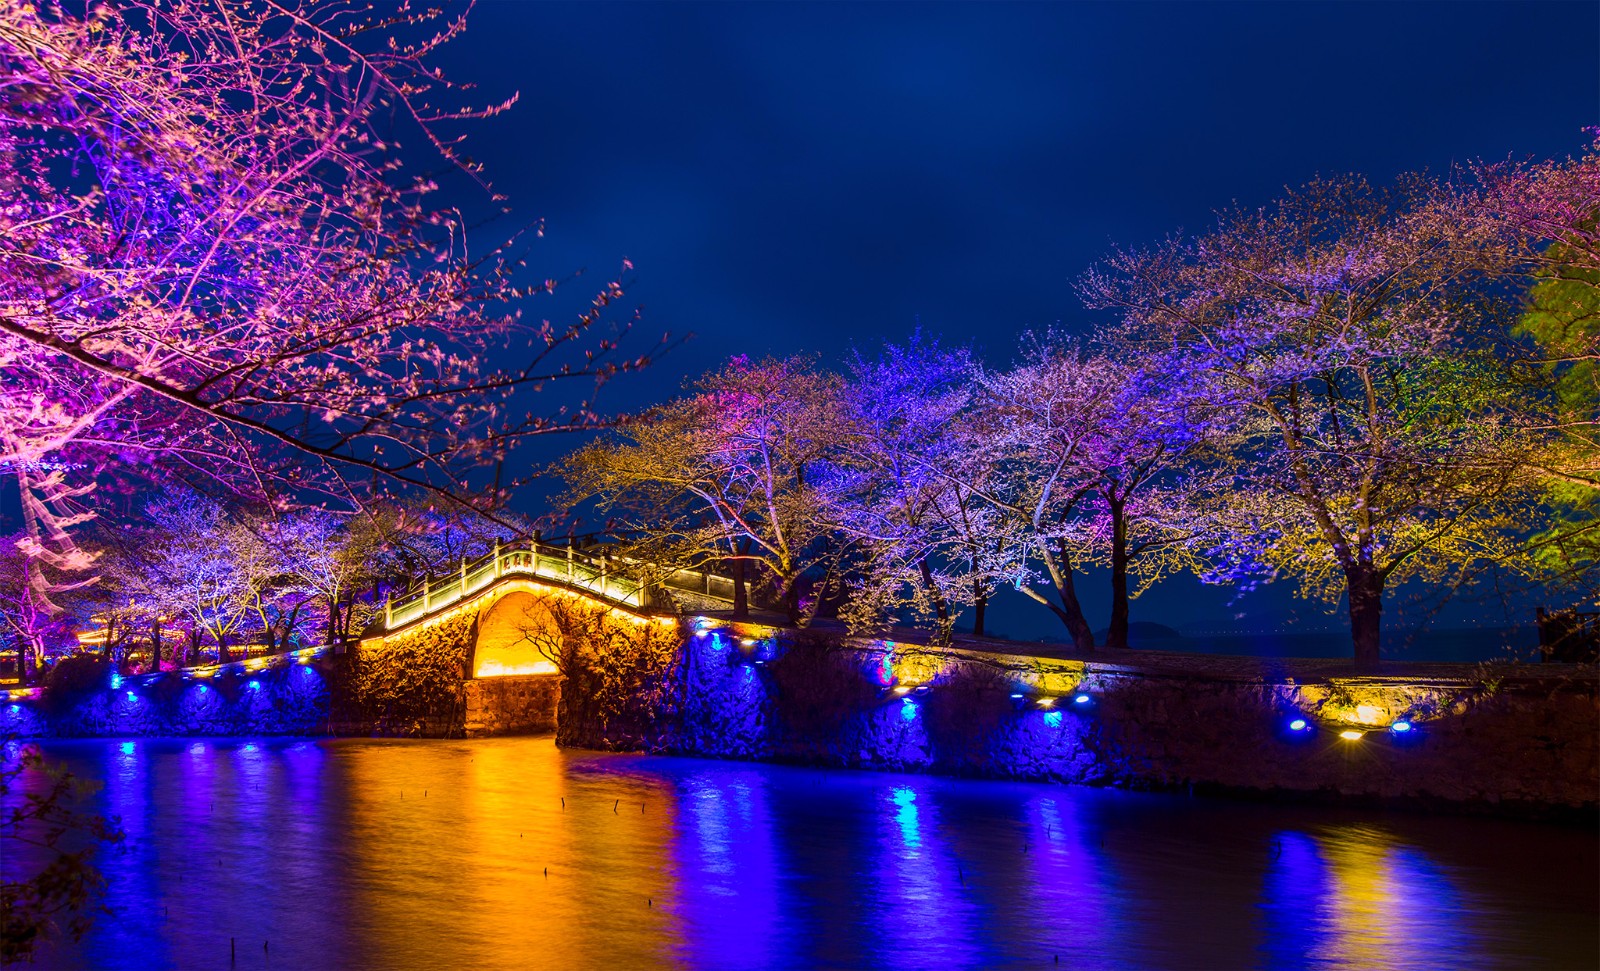 无锡太湖鼋头渚夜赏樱花,昨晚开始试灯